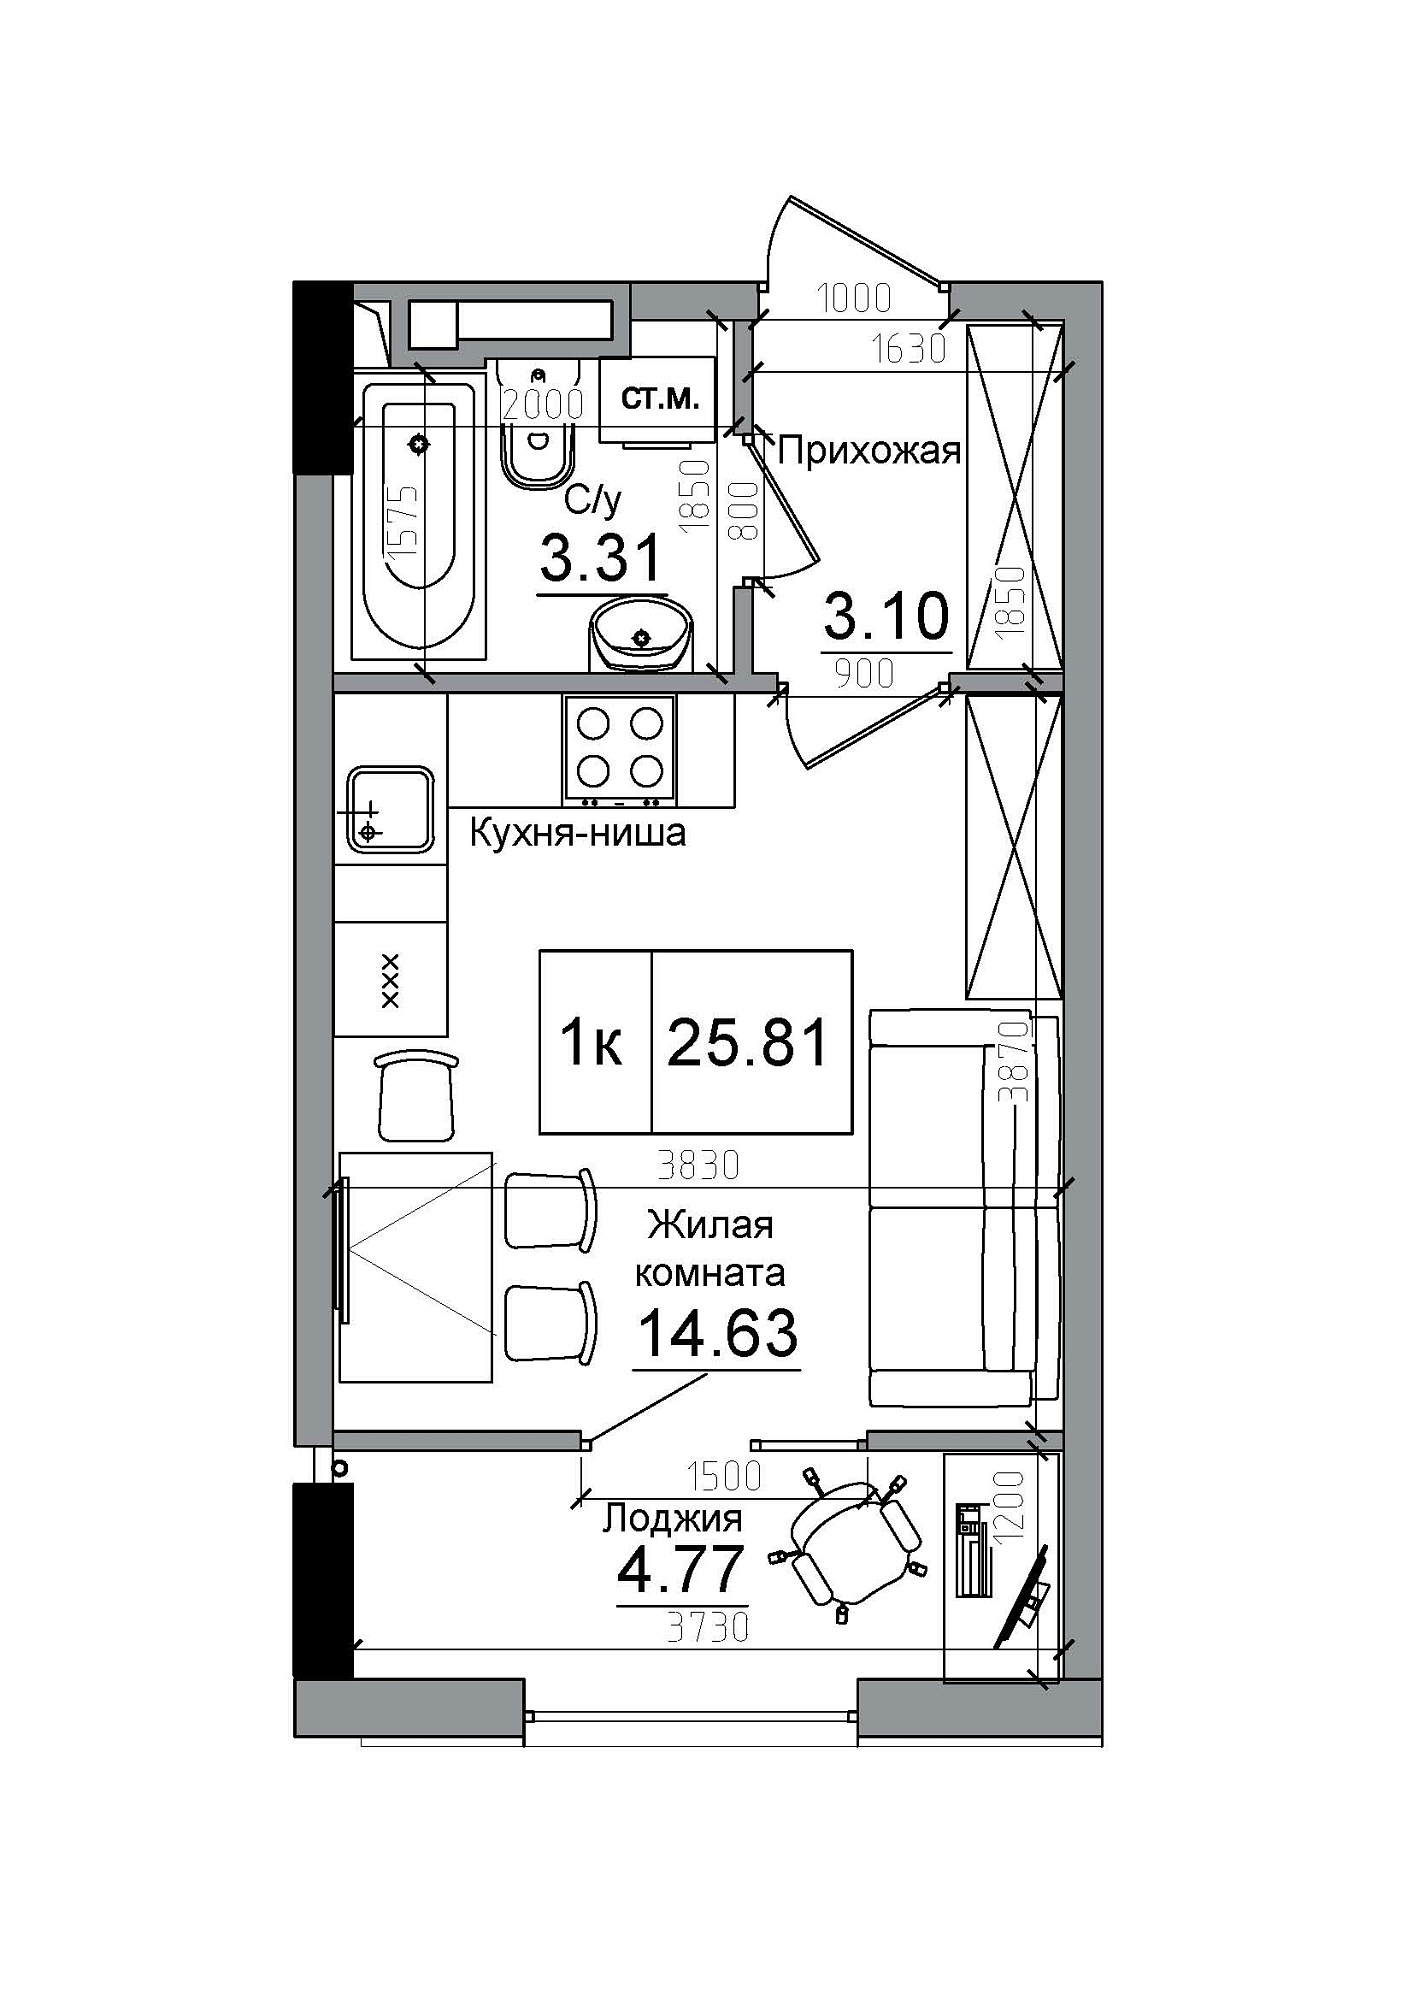 Планування Smart-квартира площею 25.81м2, AB-12-01/00013.